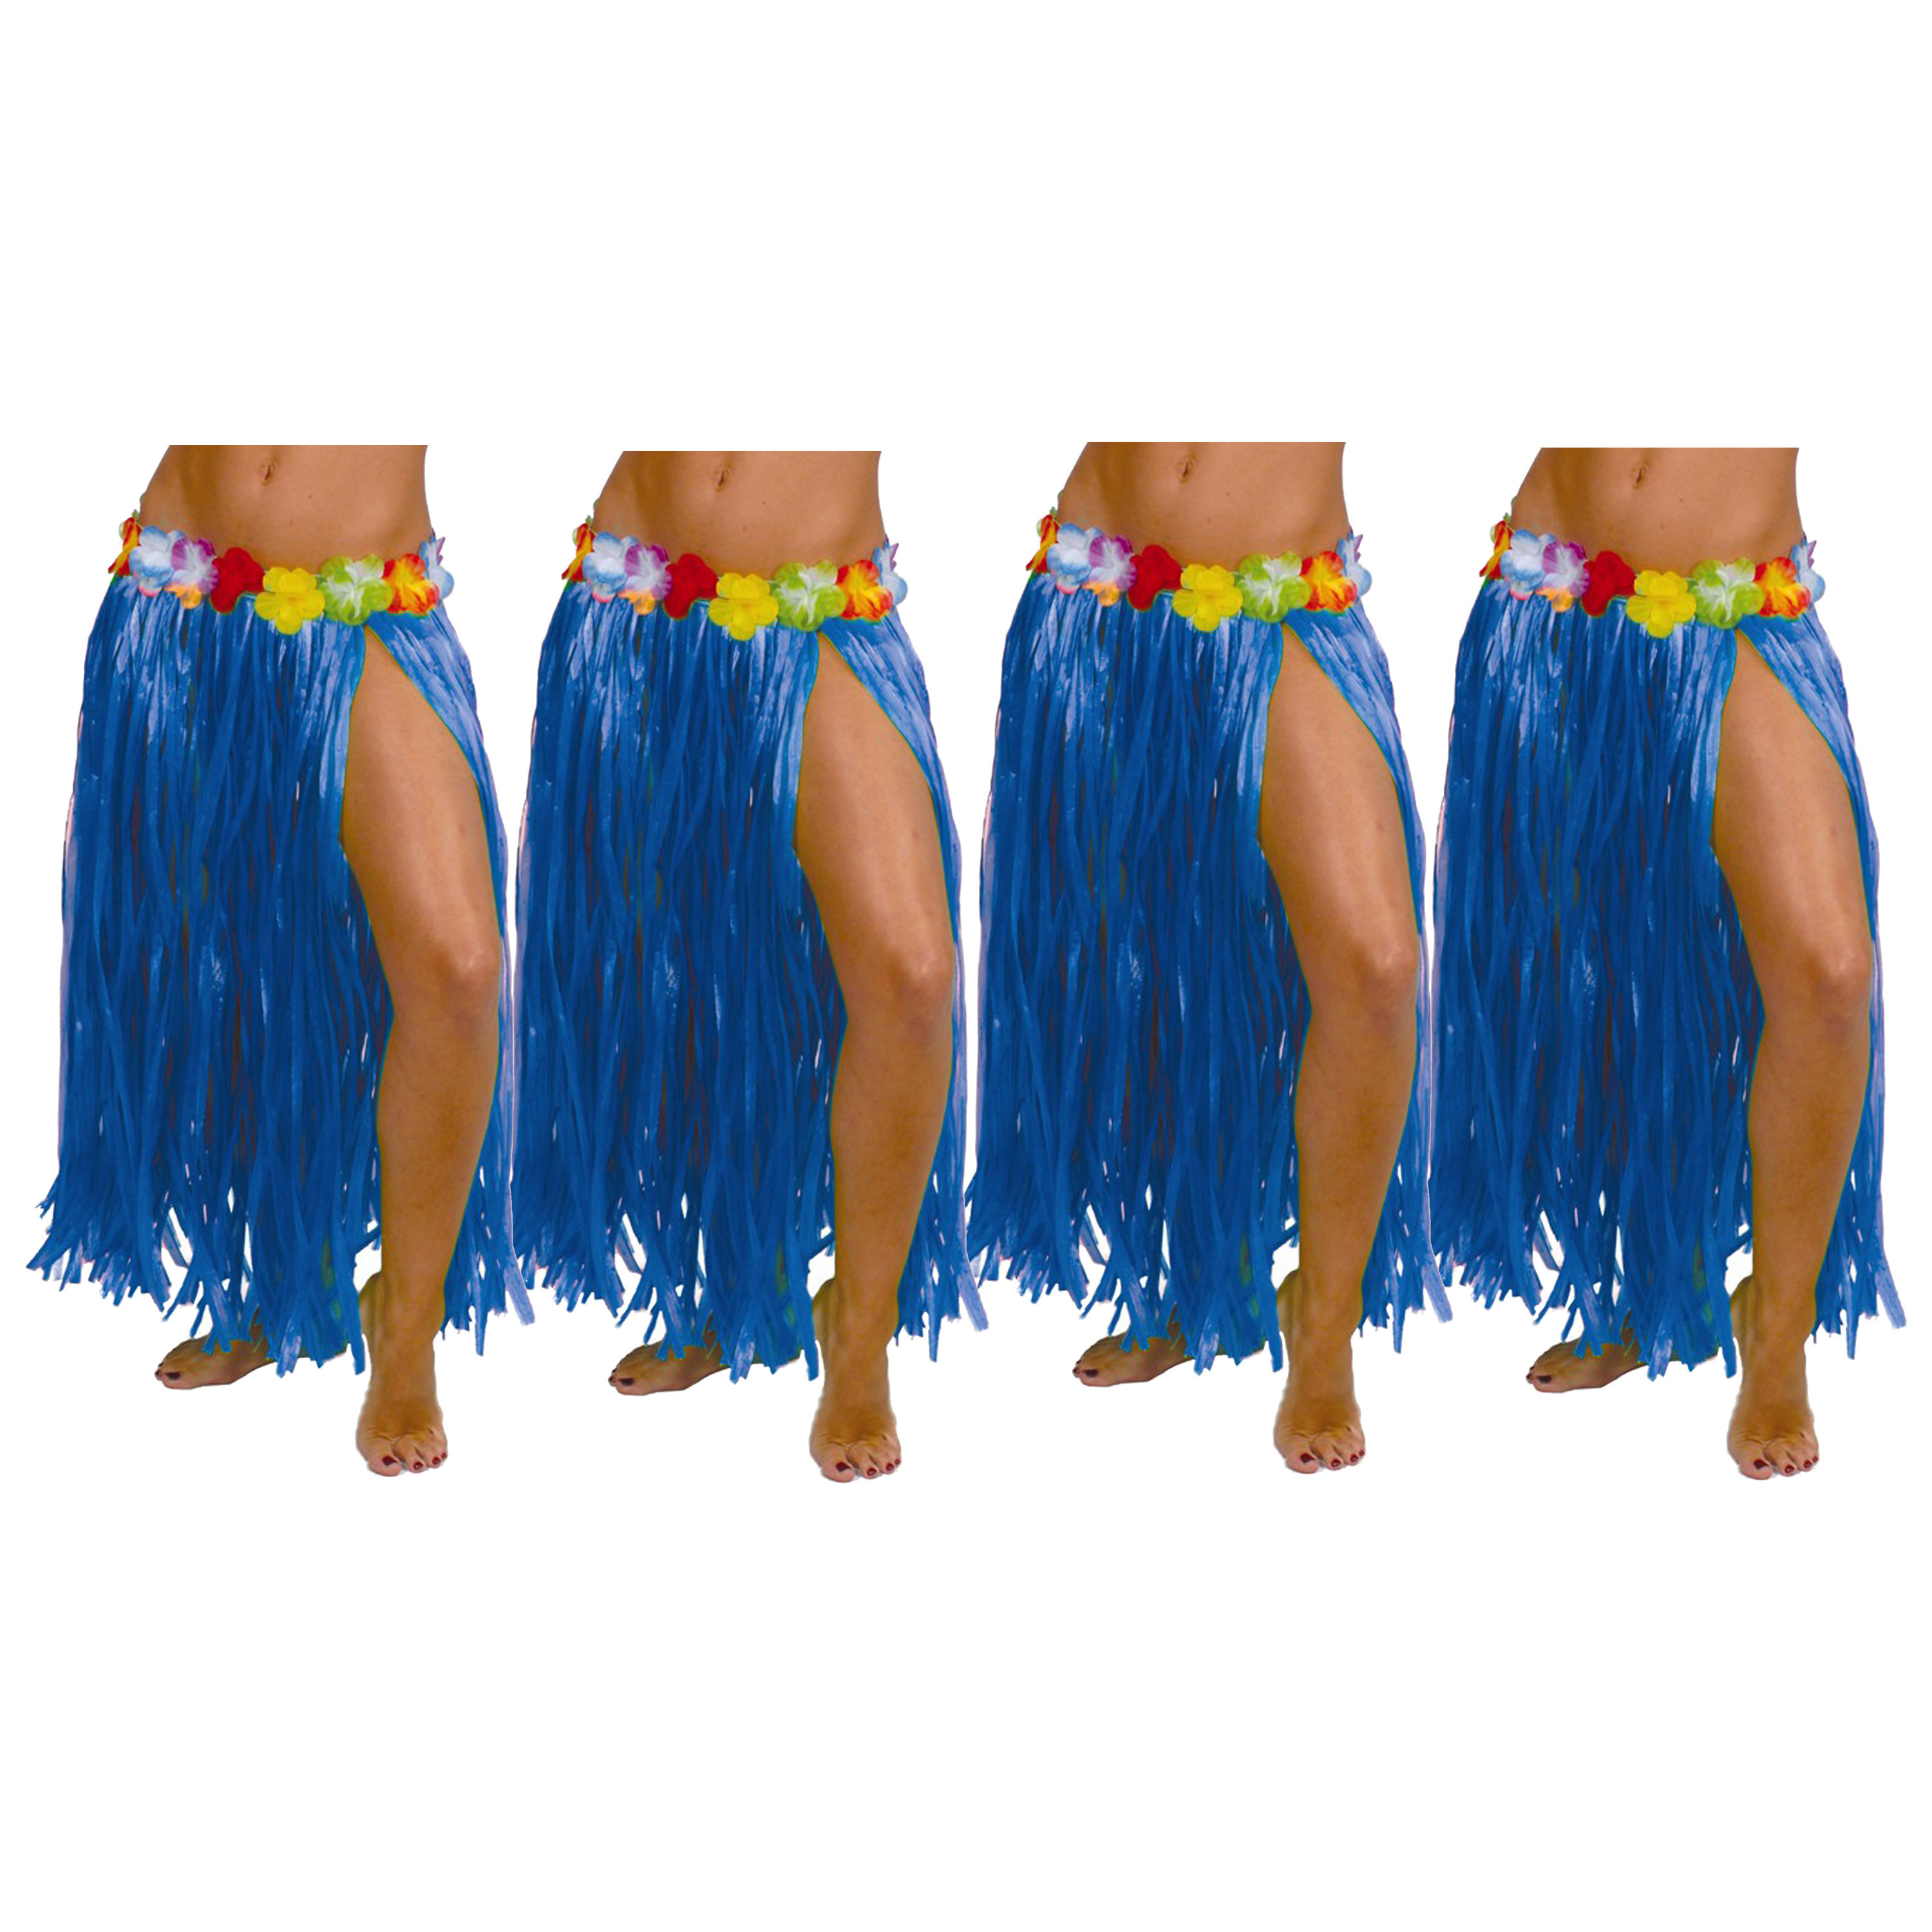 Hawaii verkleed rokje 4x voor volwassenen blauw 75 cm rieten hoela rokje tropisch